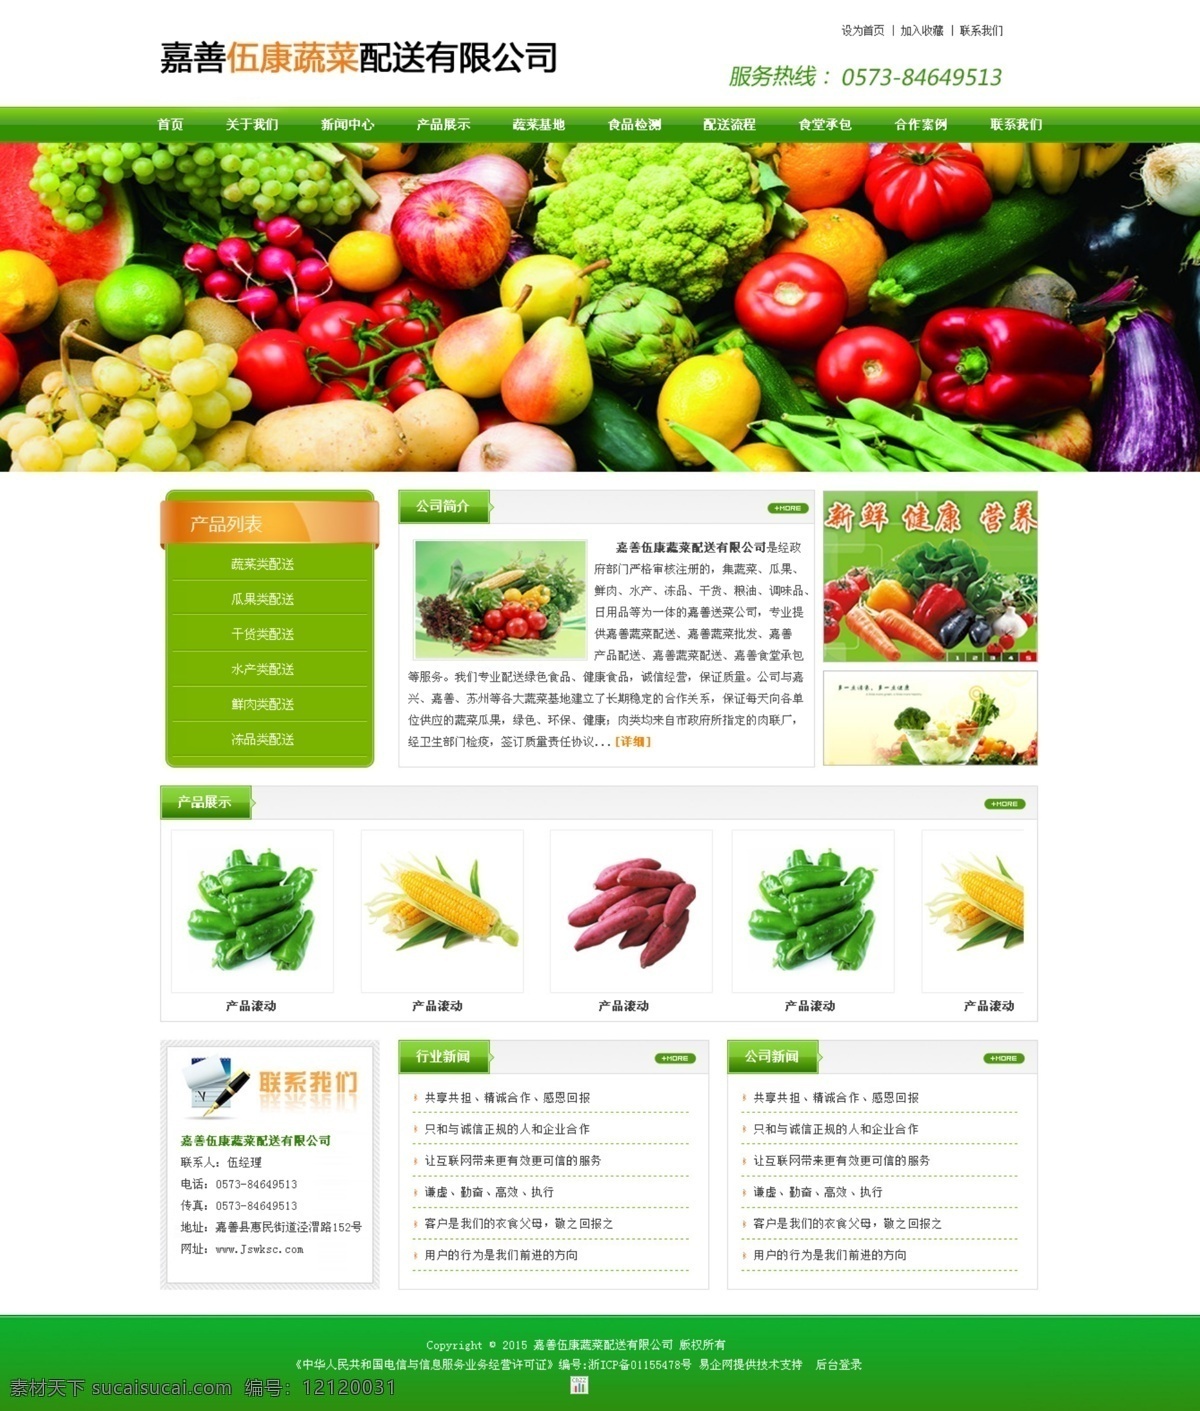 嘉善 伍 康 蔬菜 配送 有限公司 专业蔬菜配送 各种 大小 食堂 承包 地区 都 网页素材 网页模板